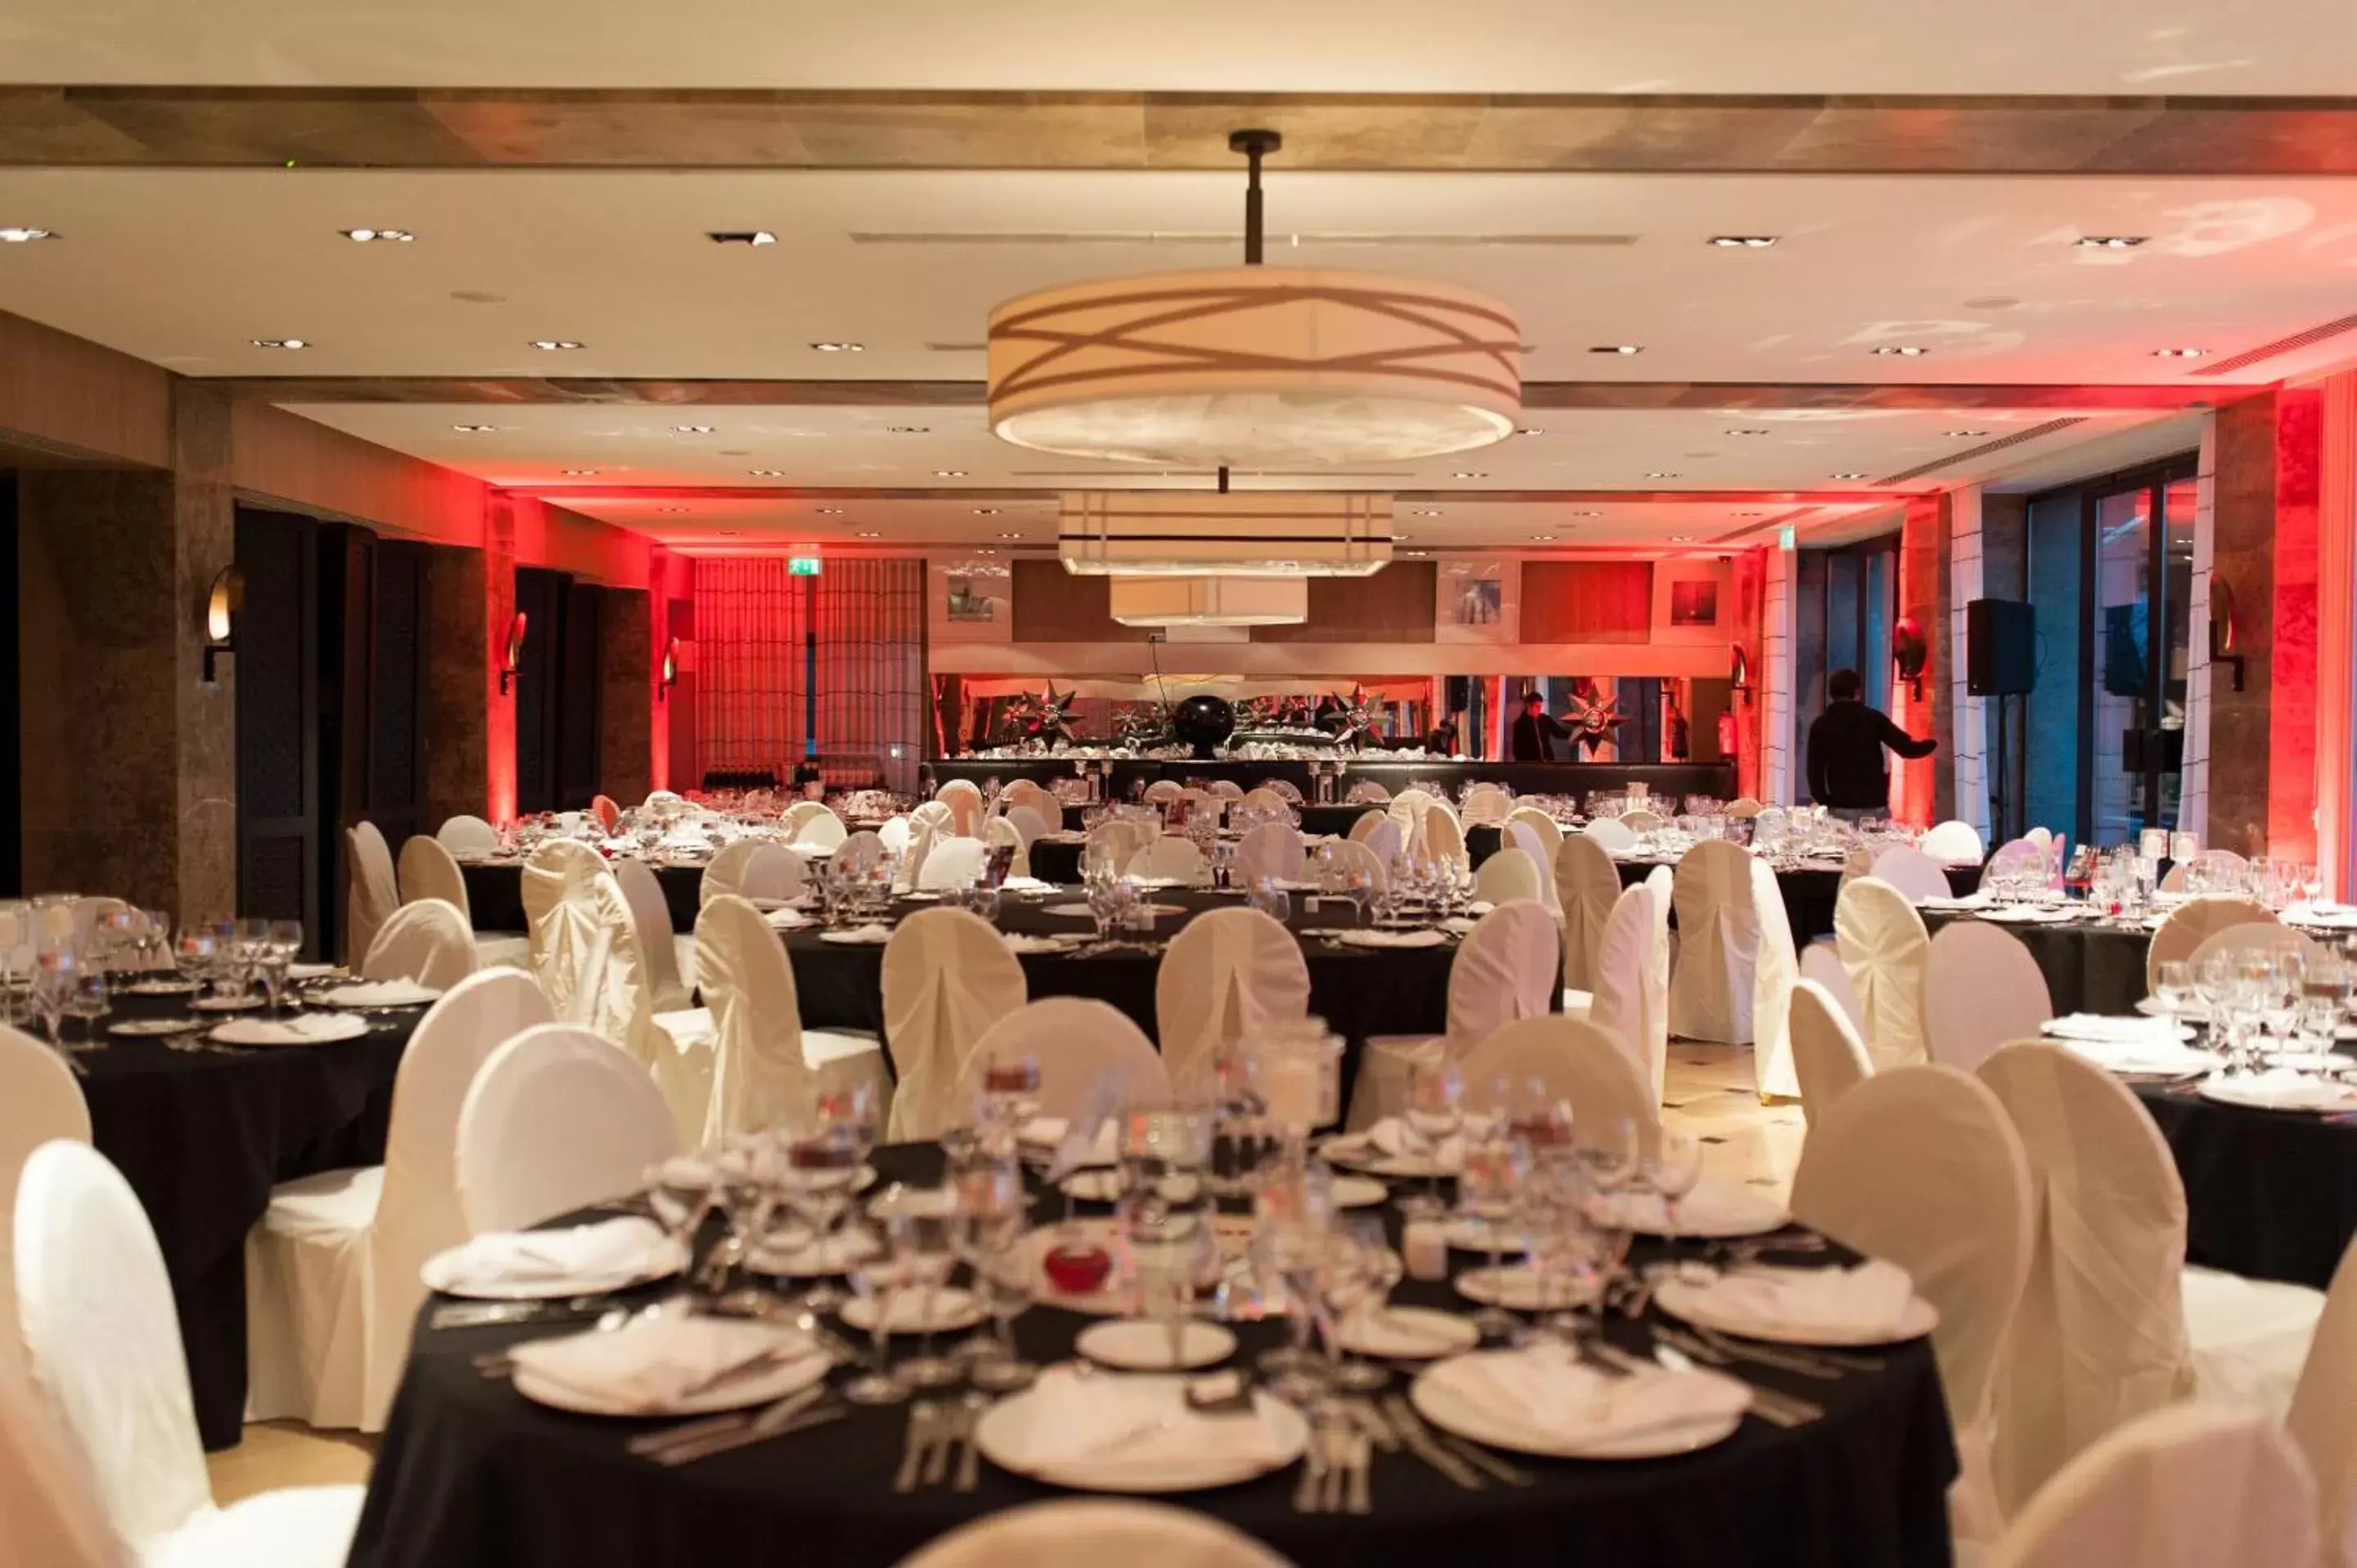 Banquet/Function facilities, Banquet Facilities in Grande Real Villa Itália Hotel & Spa